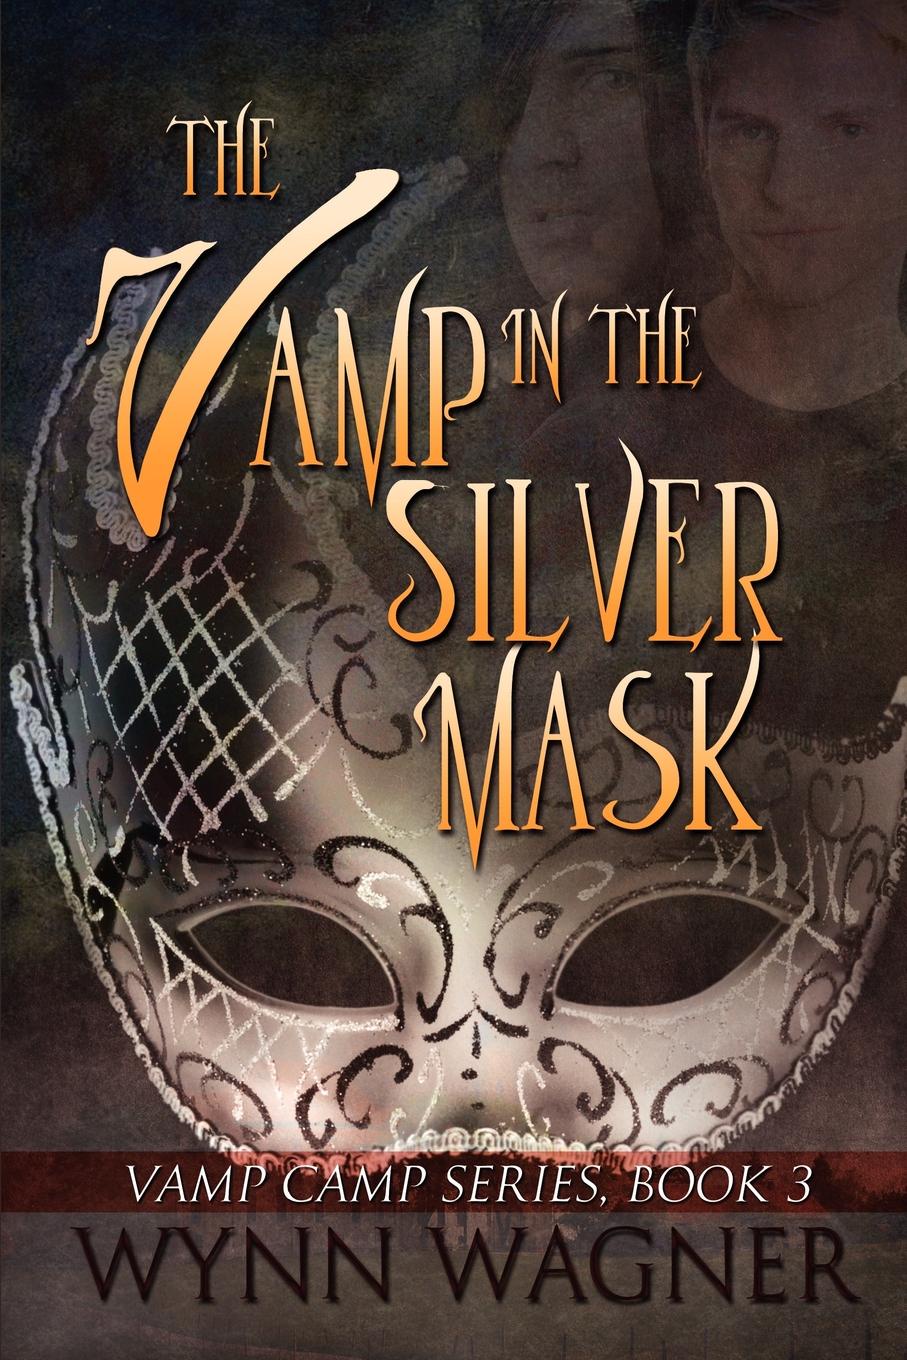 Книга про маски. Серебряная маска книга. Empire of the Vampire книга. Серебряная маска книга обложка.